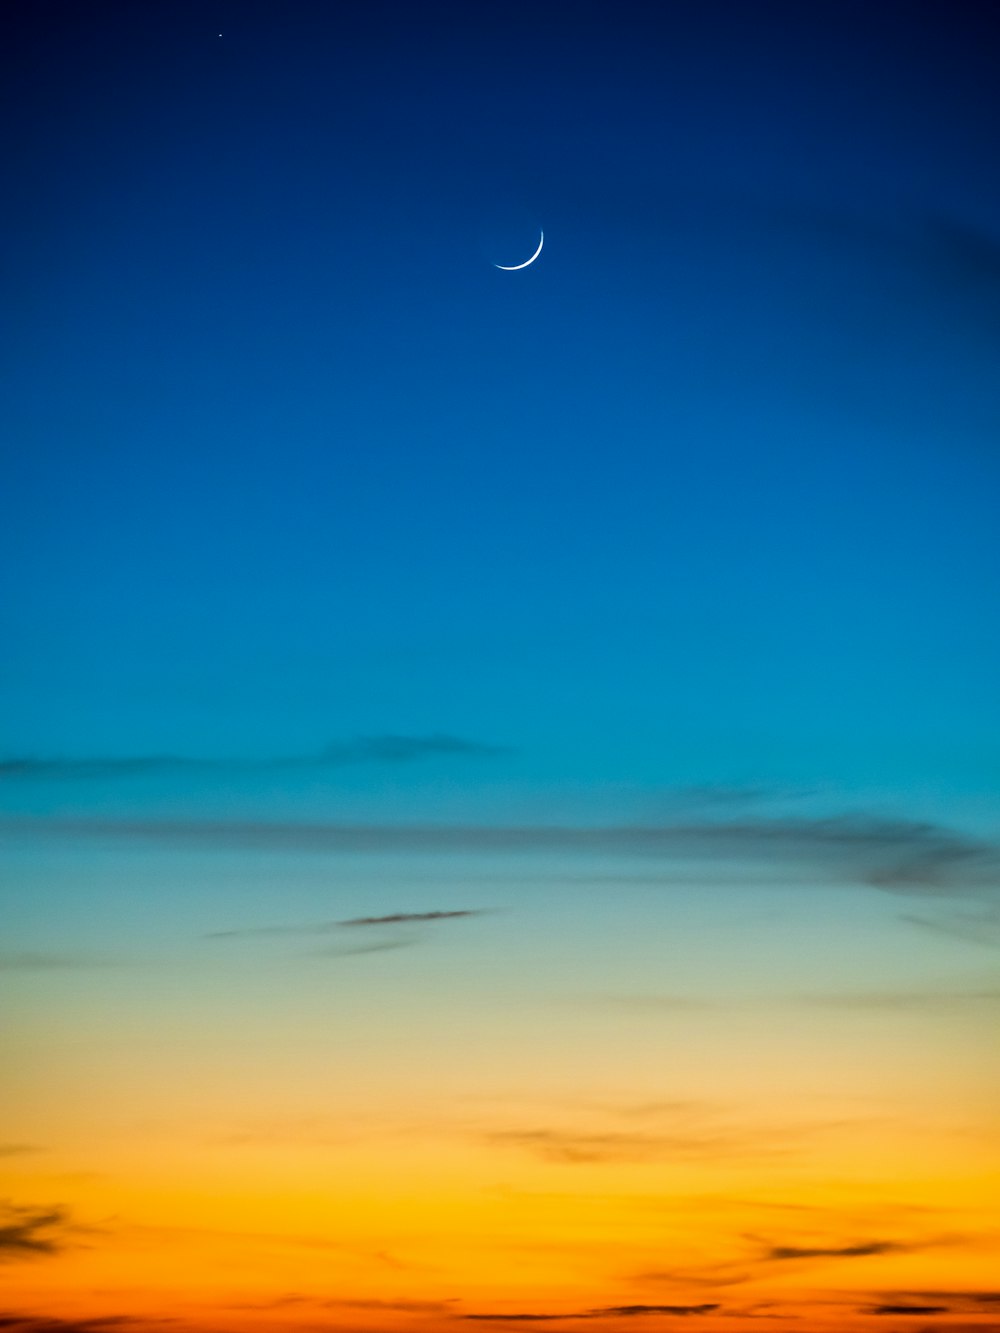 Luna creciente y cielo azul durante la vista de la hora dorada